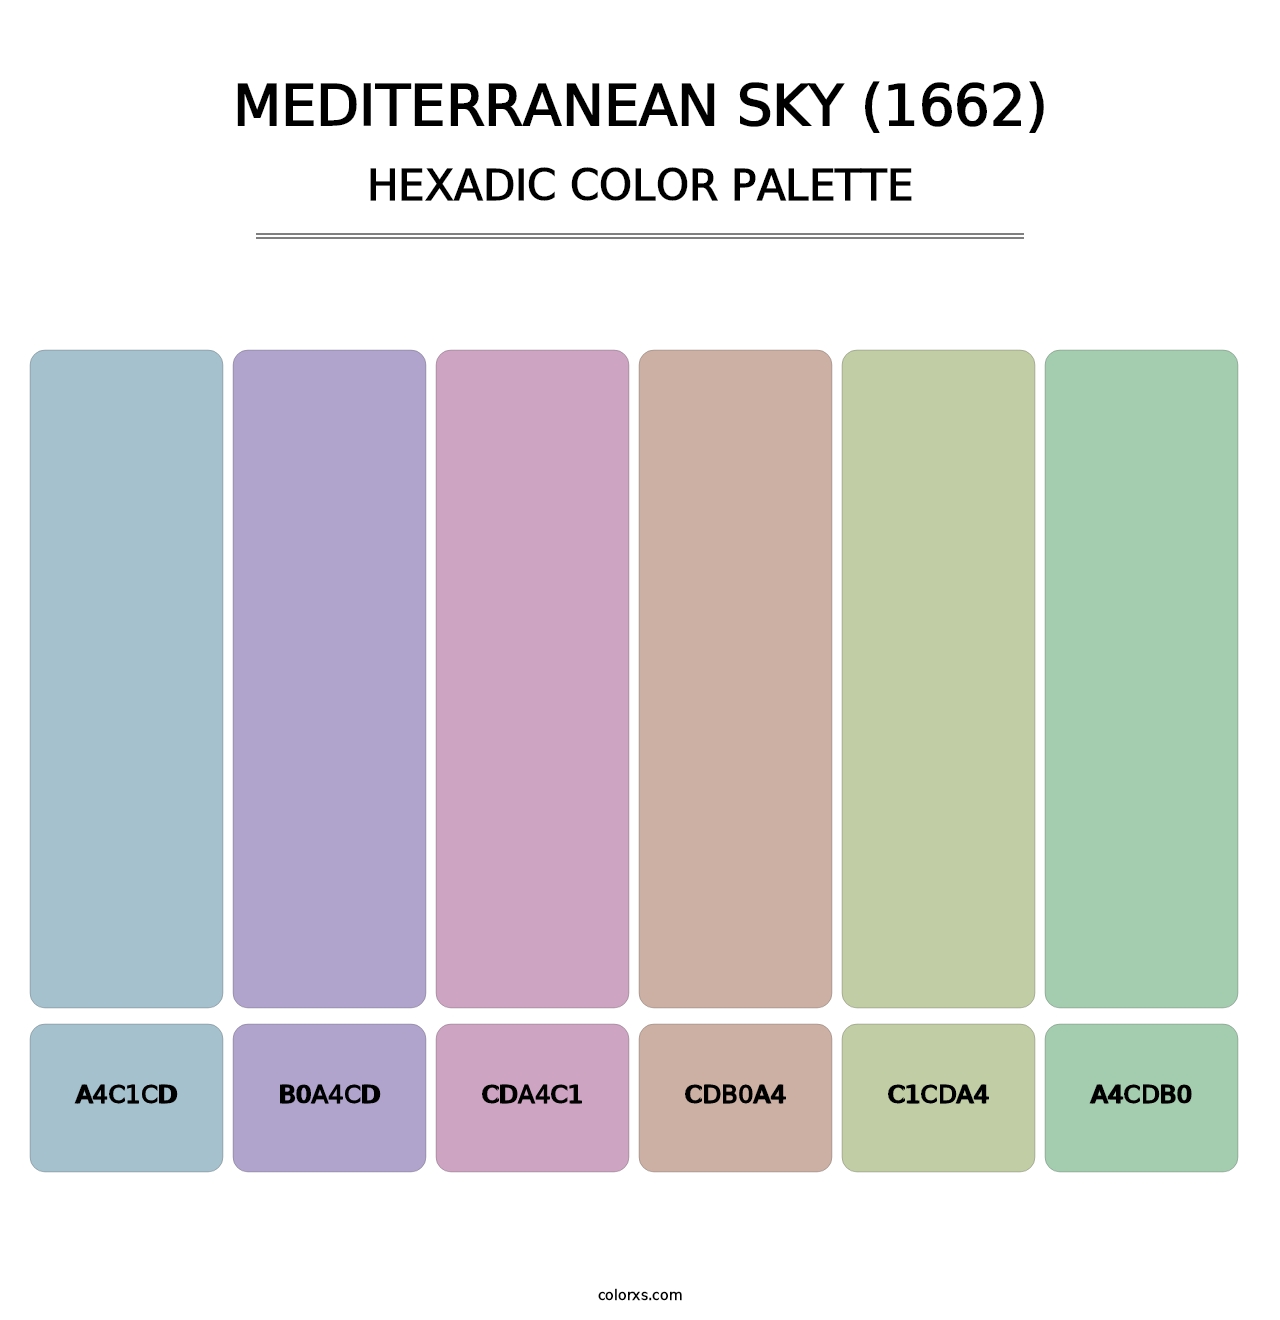 Mediterranean Sky (1662) - Hexadic Color Palette